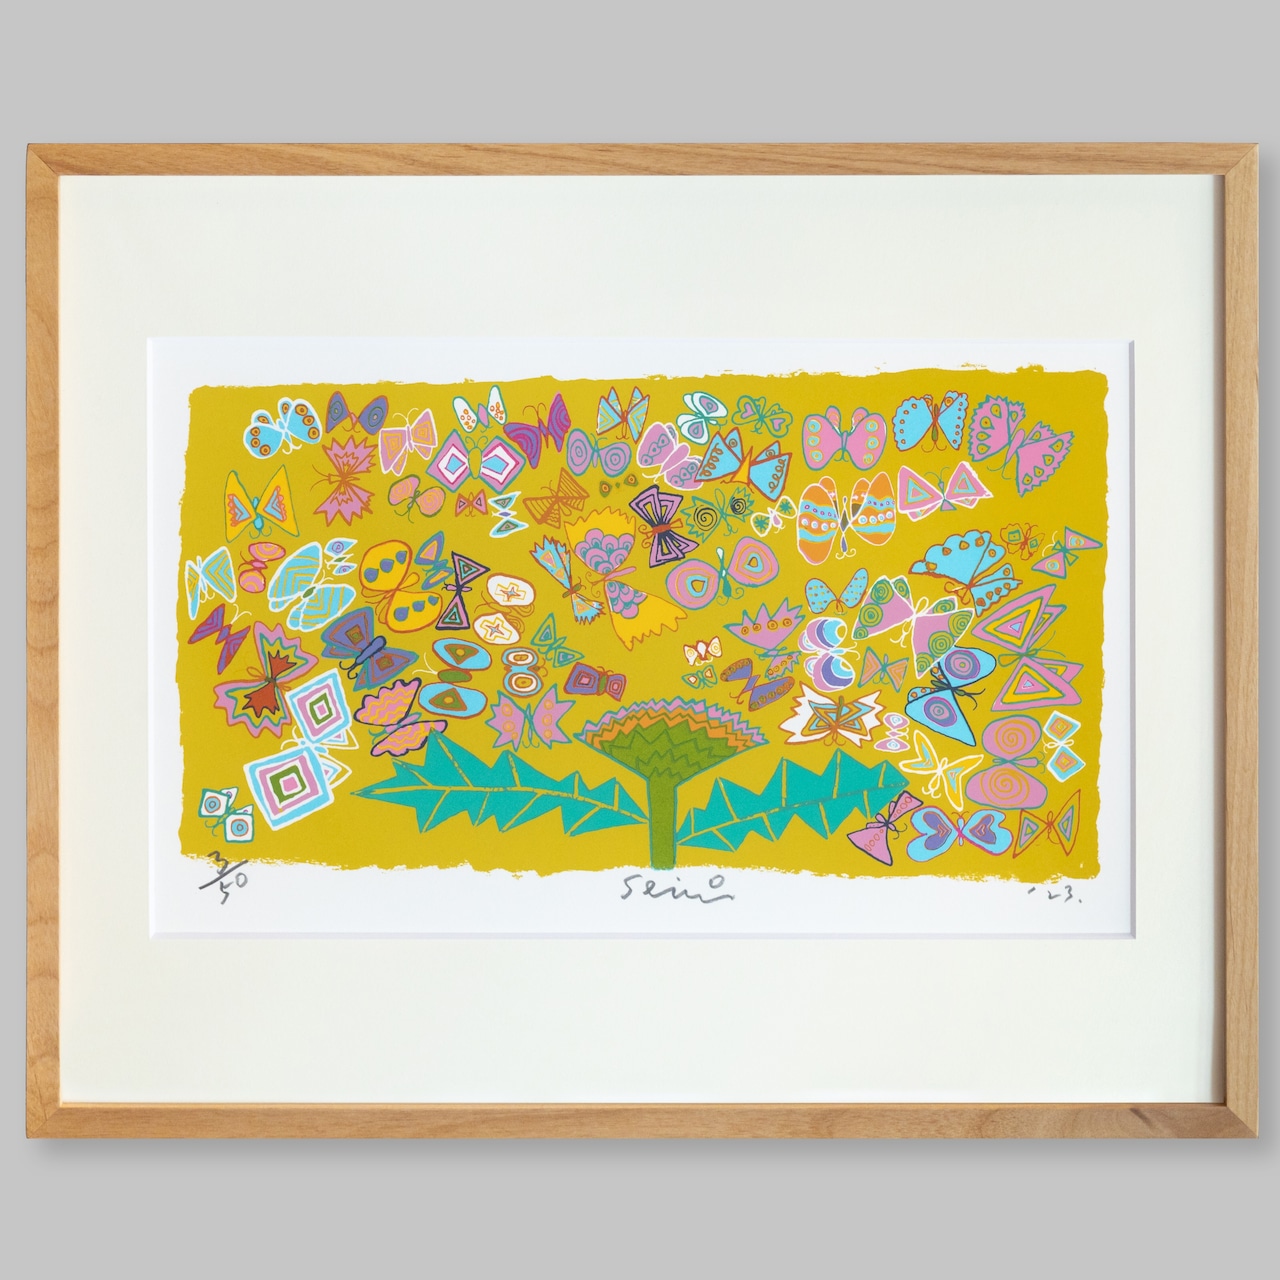 田島征三 シルクスクリーン「花と蝶」/ Tashima Seizo Screen painting ( Flower and Butterfly)